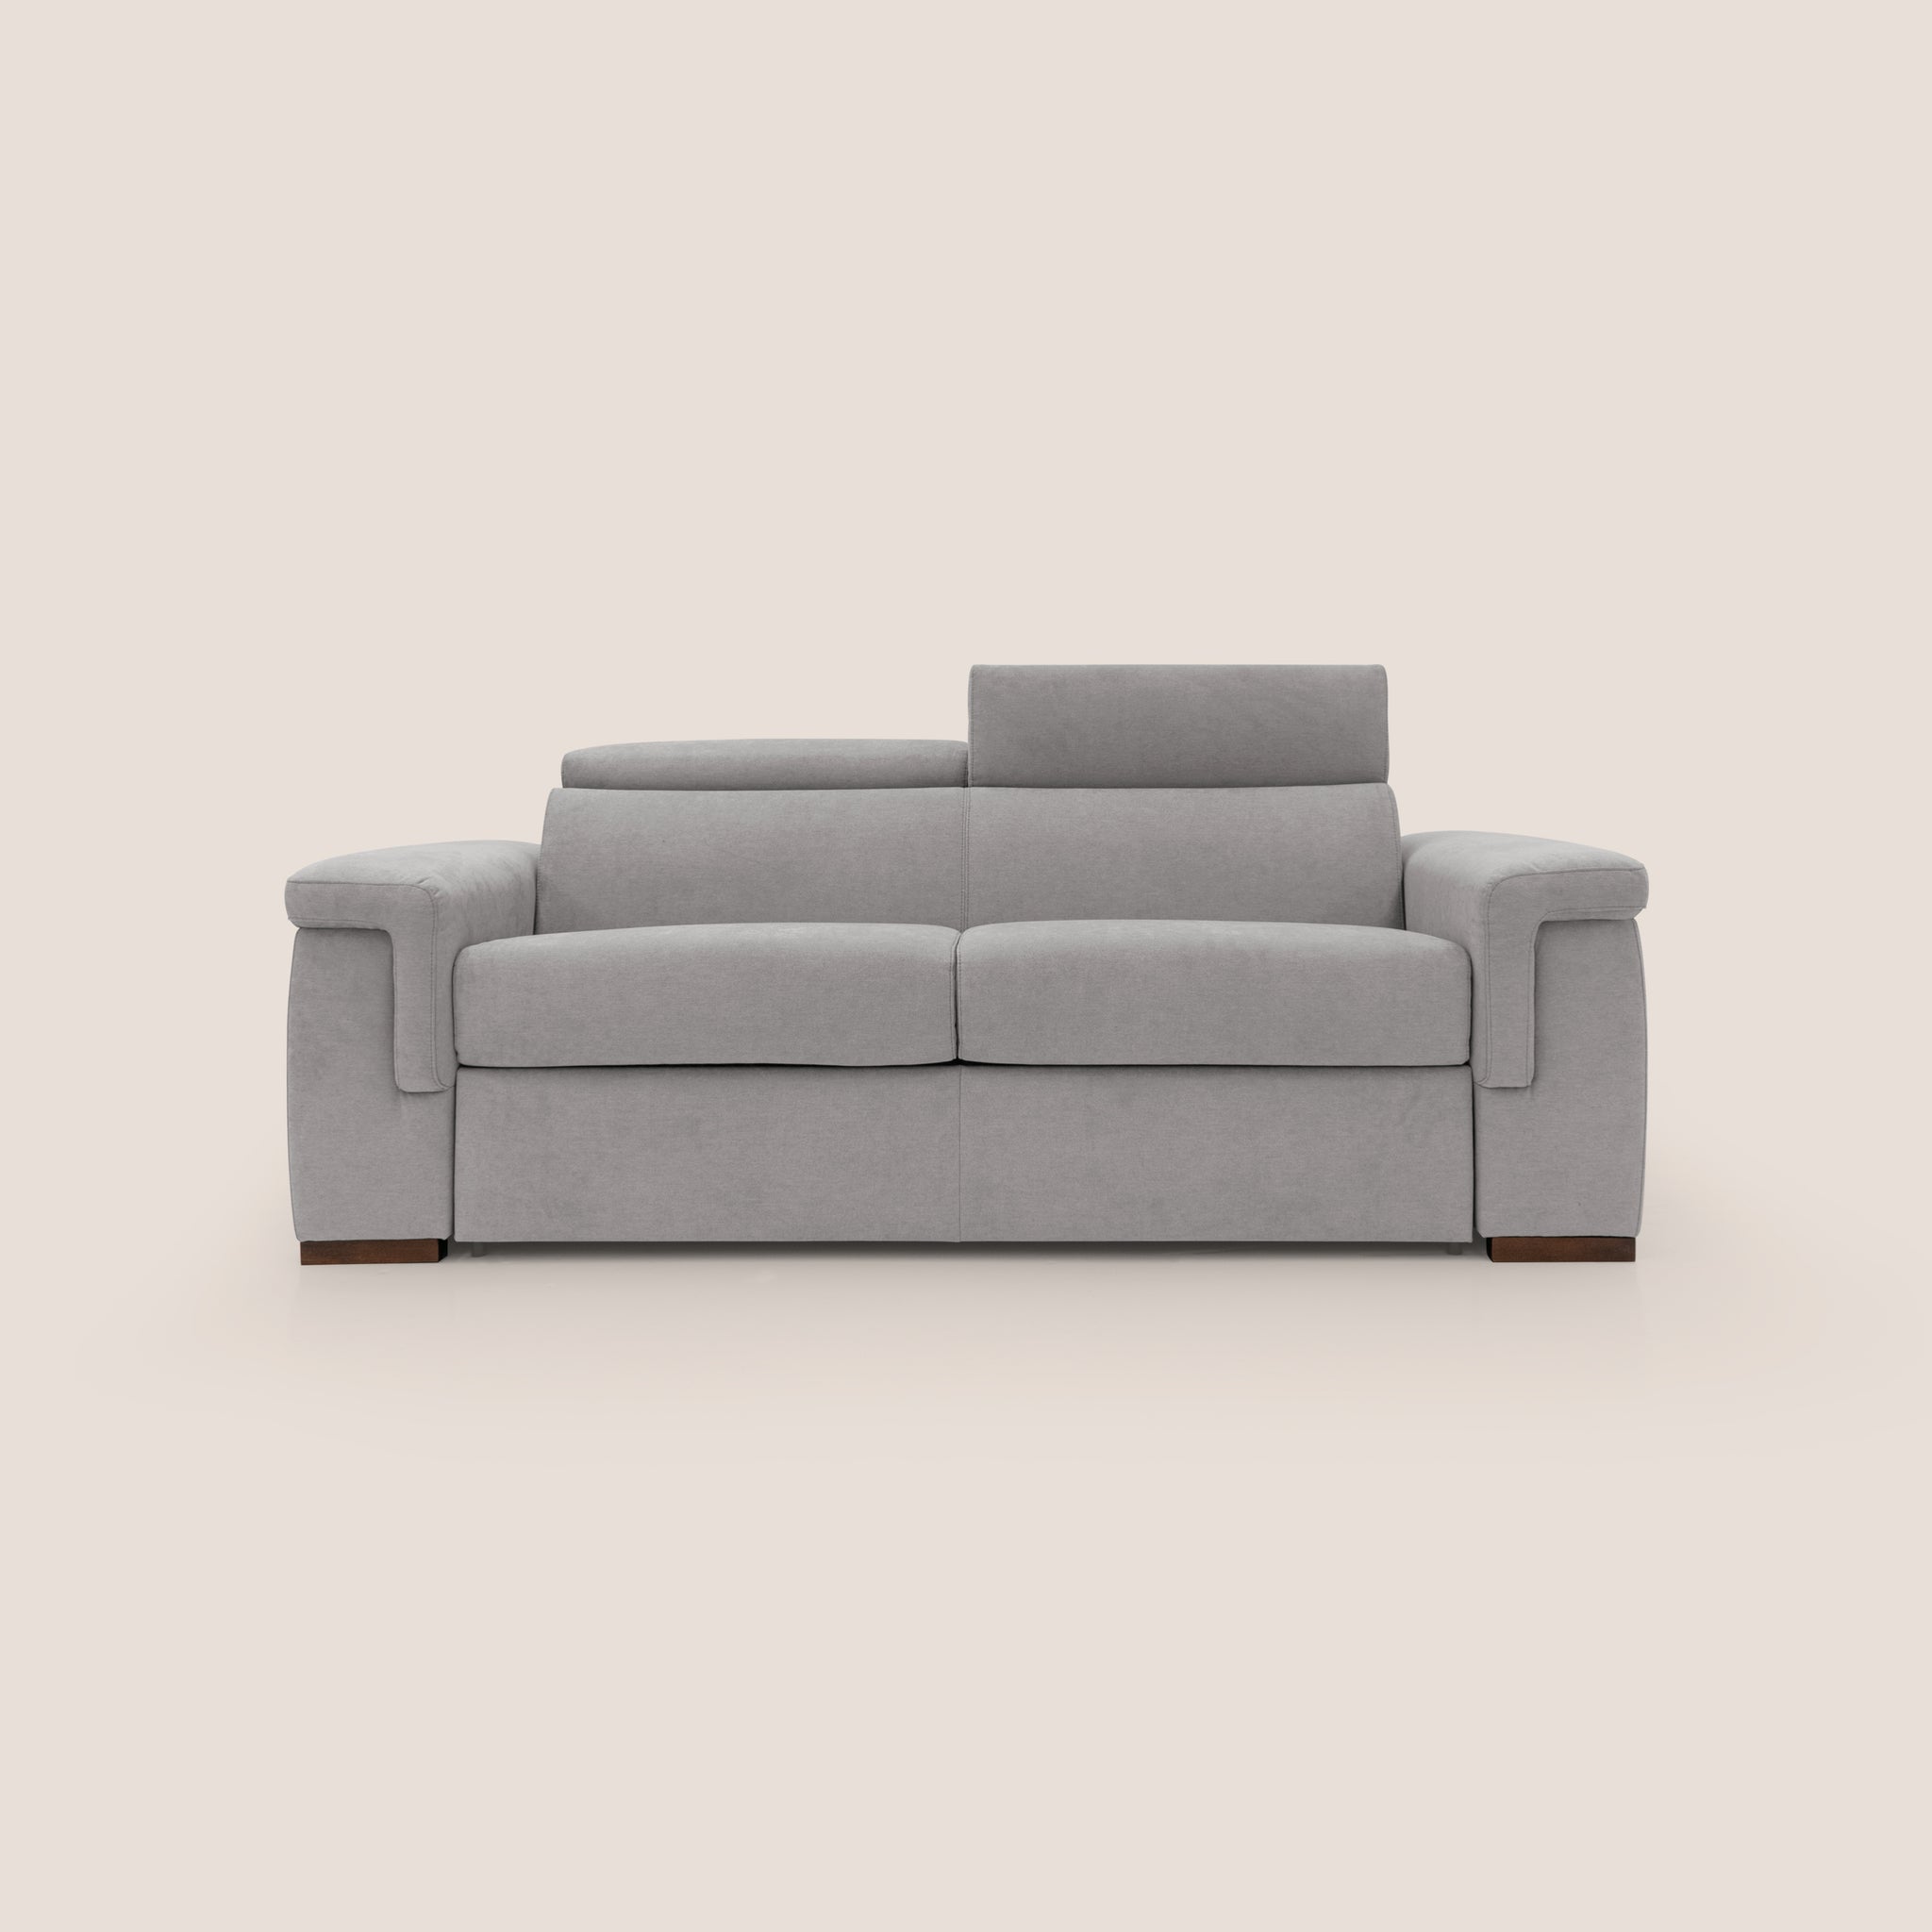 Giunone divano letto 200 cm (MAT. 120X197 cm) alto 18 cm e poggiatesta reclinabili in tessuto impermeabile T02 GRIGIO CHIARO